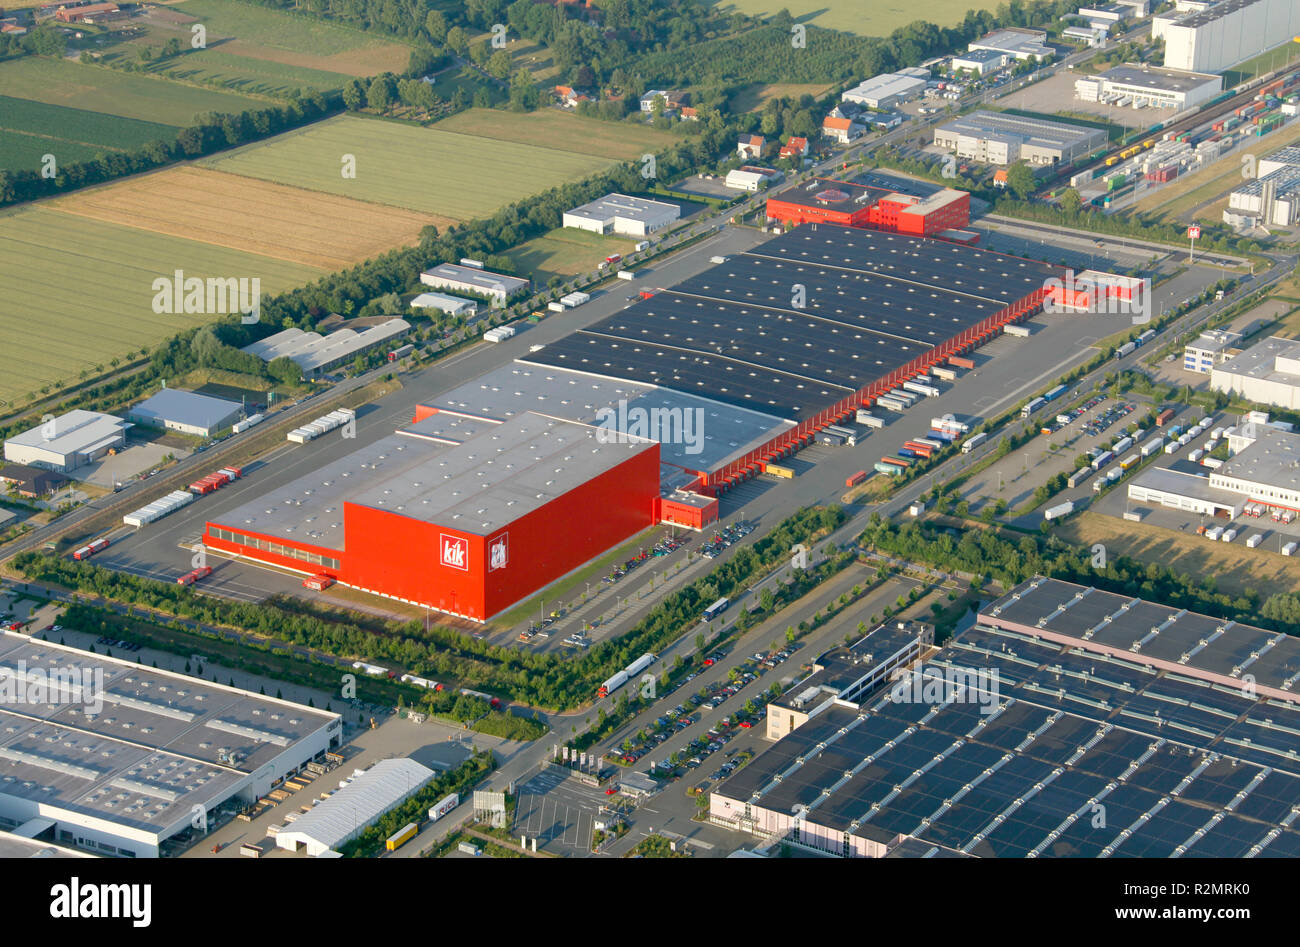 Vista aerea, KIK, sconto negozio all'ingrosso, Business Park, Hamm, la zona della Ruhr, Renania settentrionale-Vestfalia, Germania, Europa Foto Stock